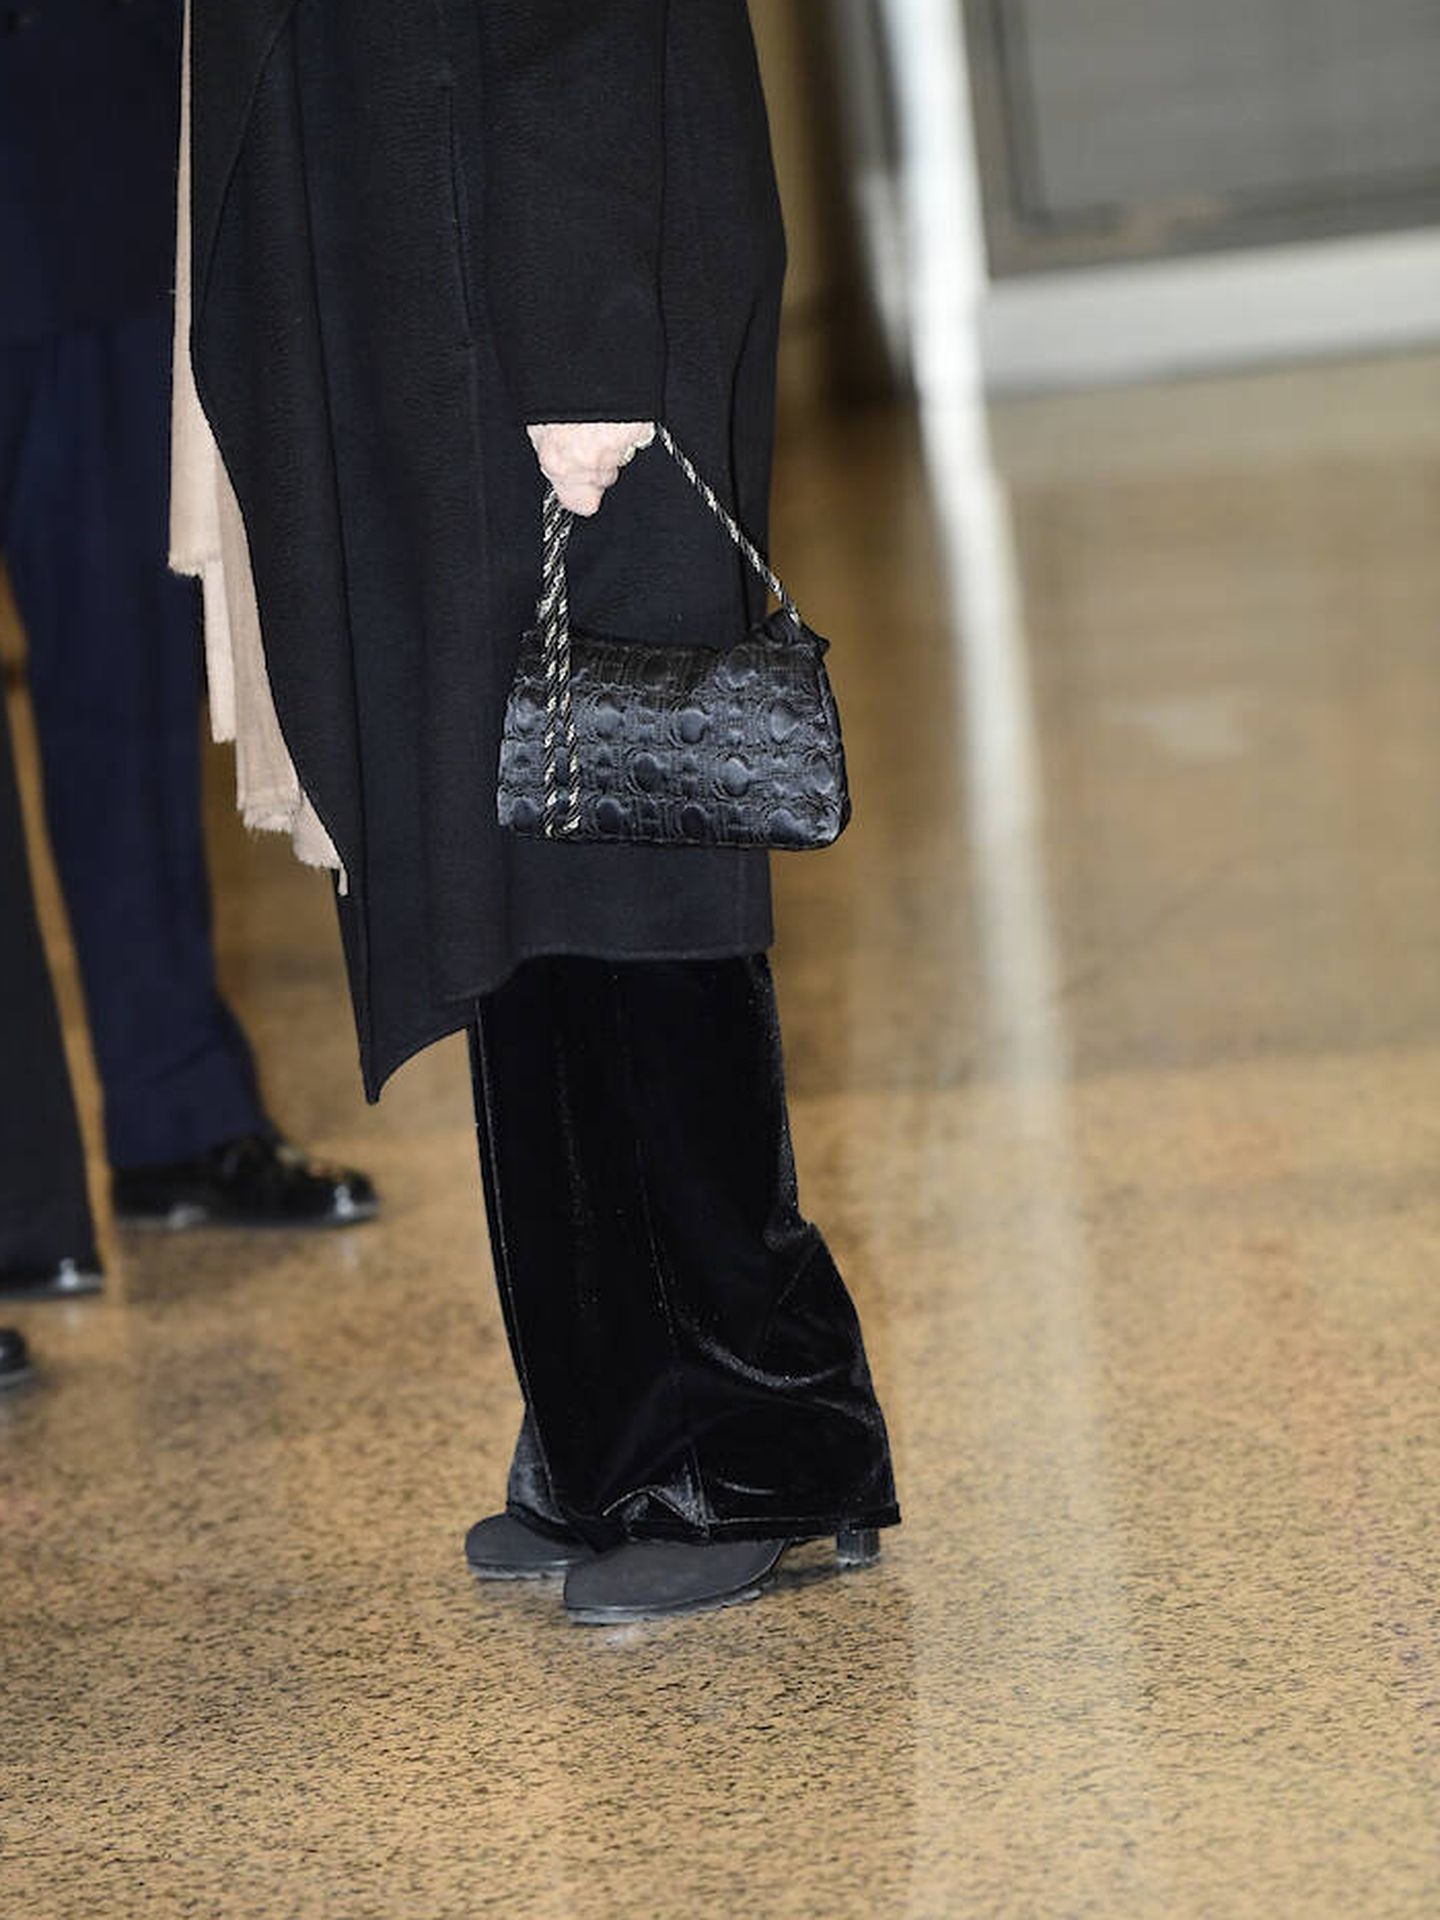 Detalles del calzado, el pantalón y el bolso lucidos por la reina Sofía. (Limited Pictures)